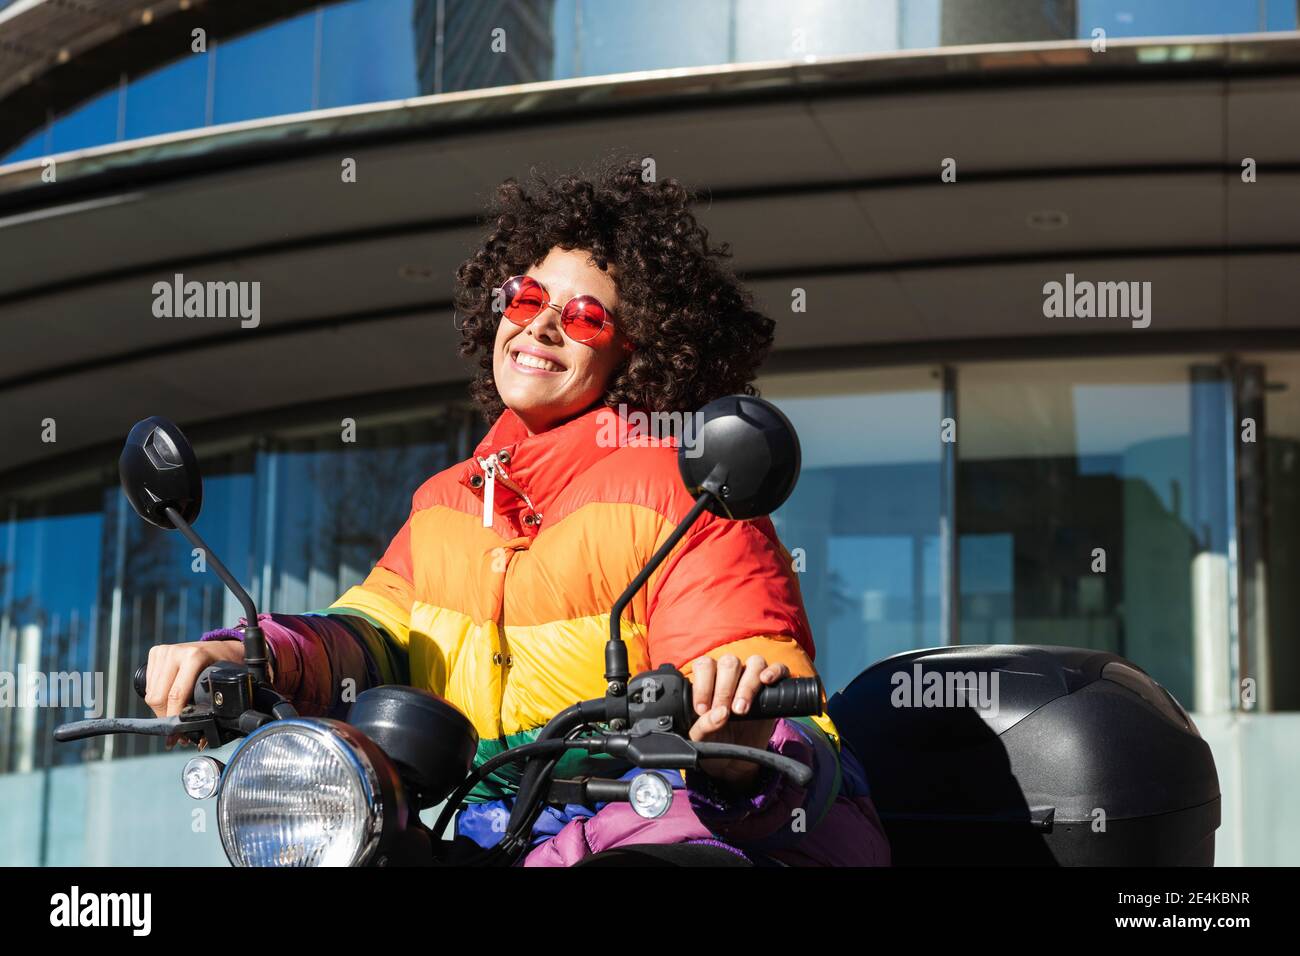 Femme portant des lunettes de soleil et une veste colorée souriant lorsqu'elle est assise moto Banque D'Images